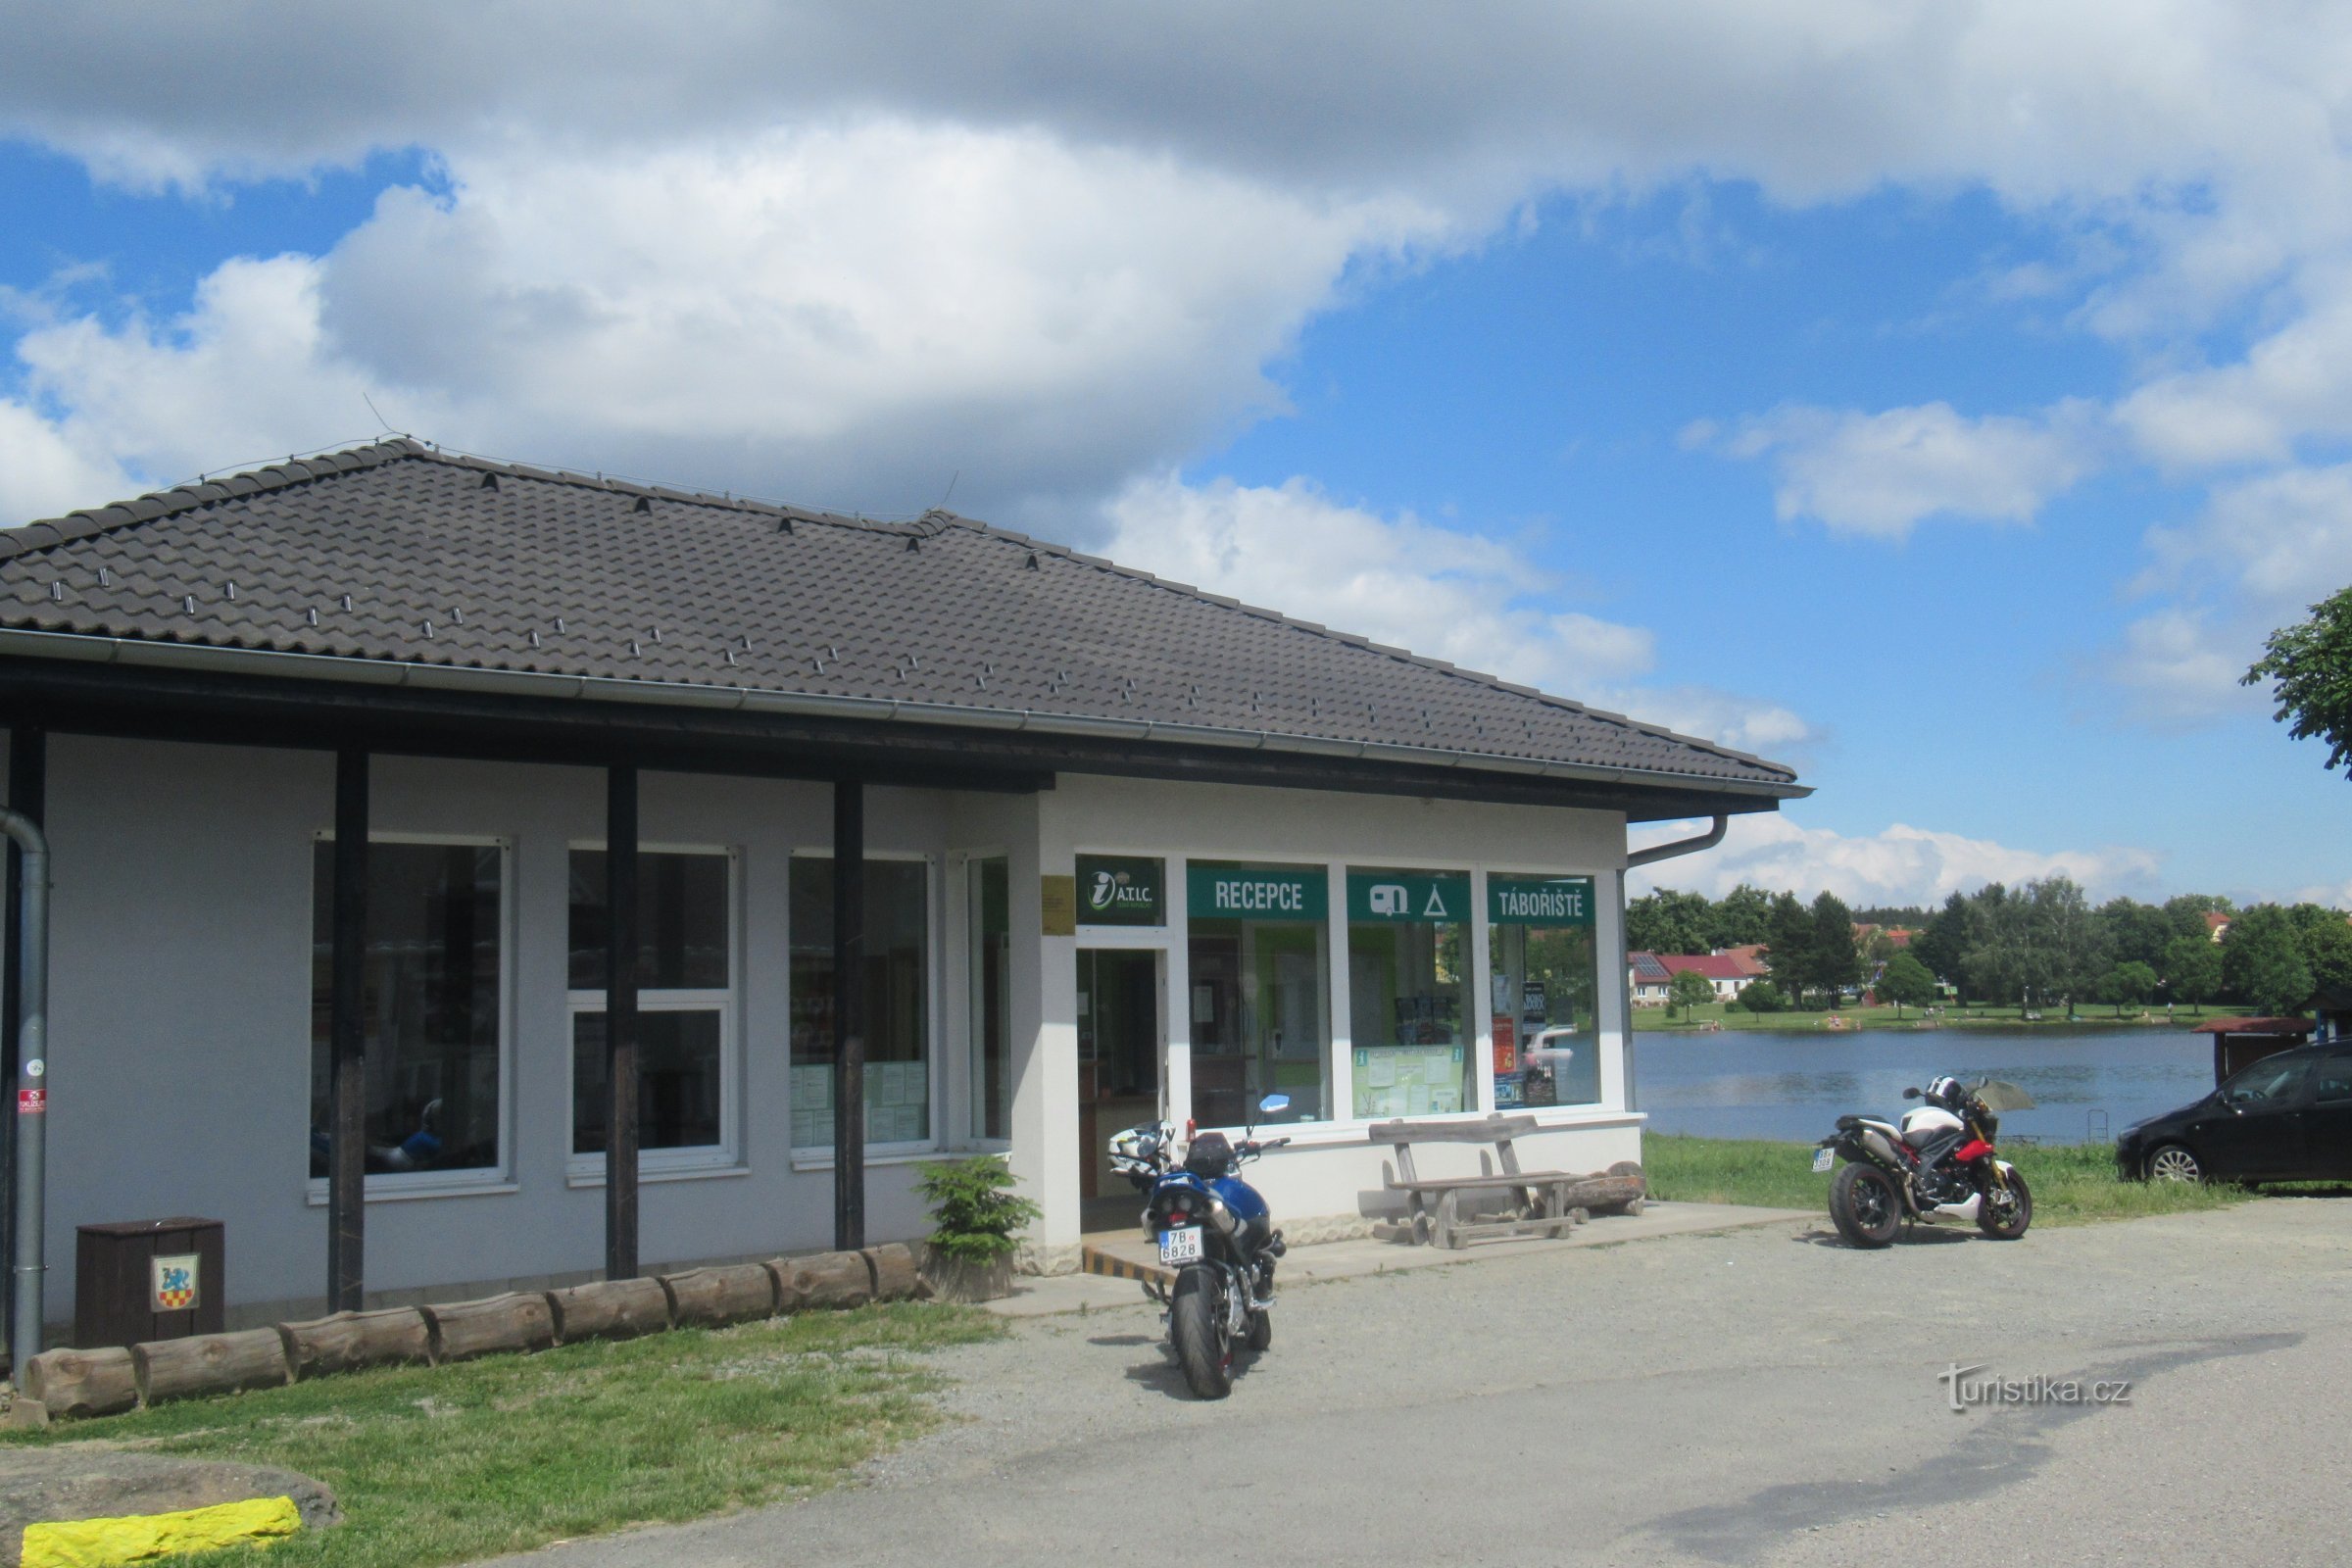 Suchý - туристичний інформаційний центр